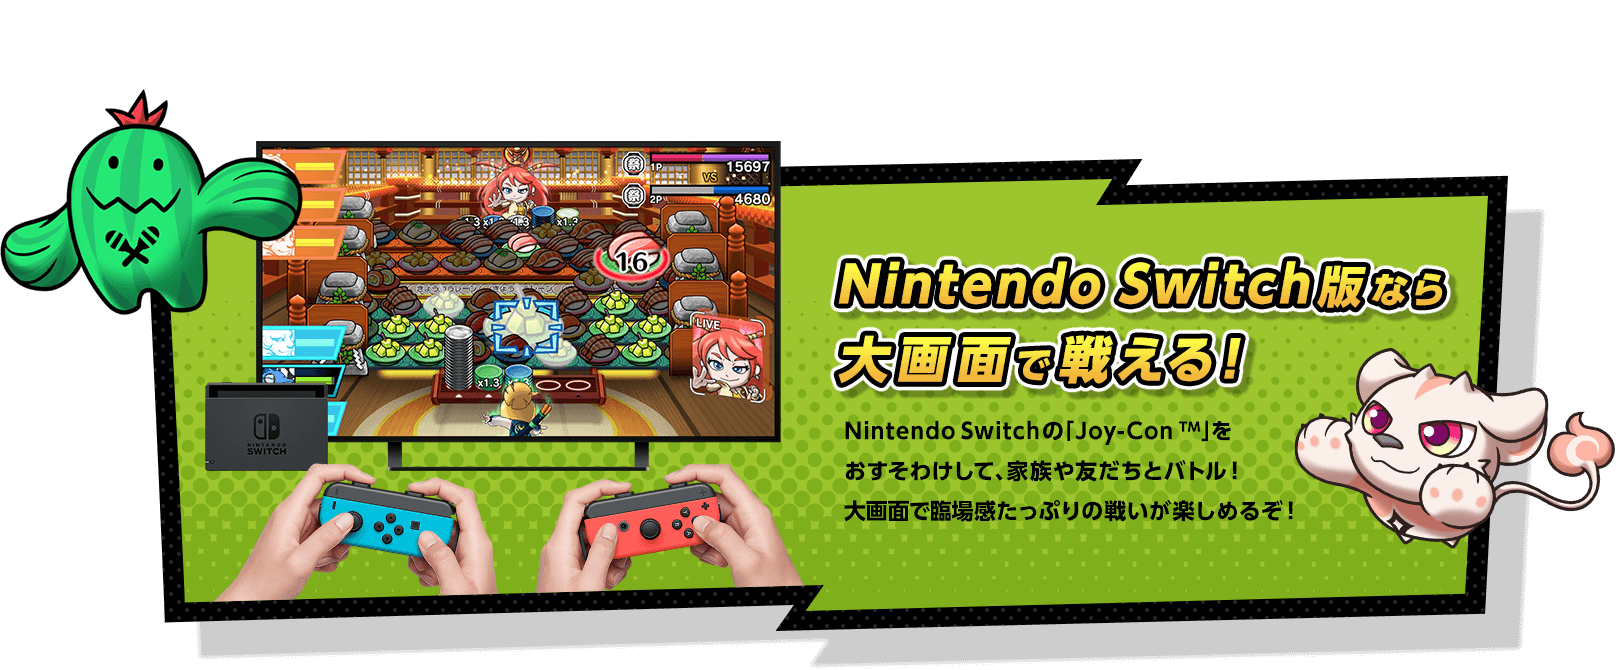 Nintendo Switch版なら大画面で戦える！ Nintendo Switchの「Joy-Con TM」をおすそわけして、家族や友だちとバトル！大画面で臨場感たっぷりの戦いが楽しめるぞ！